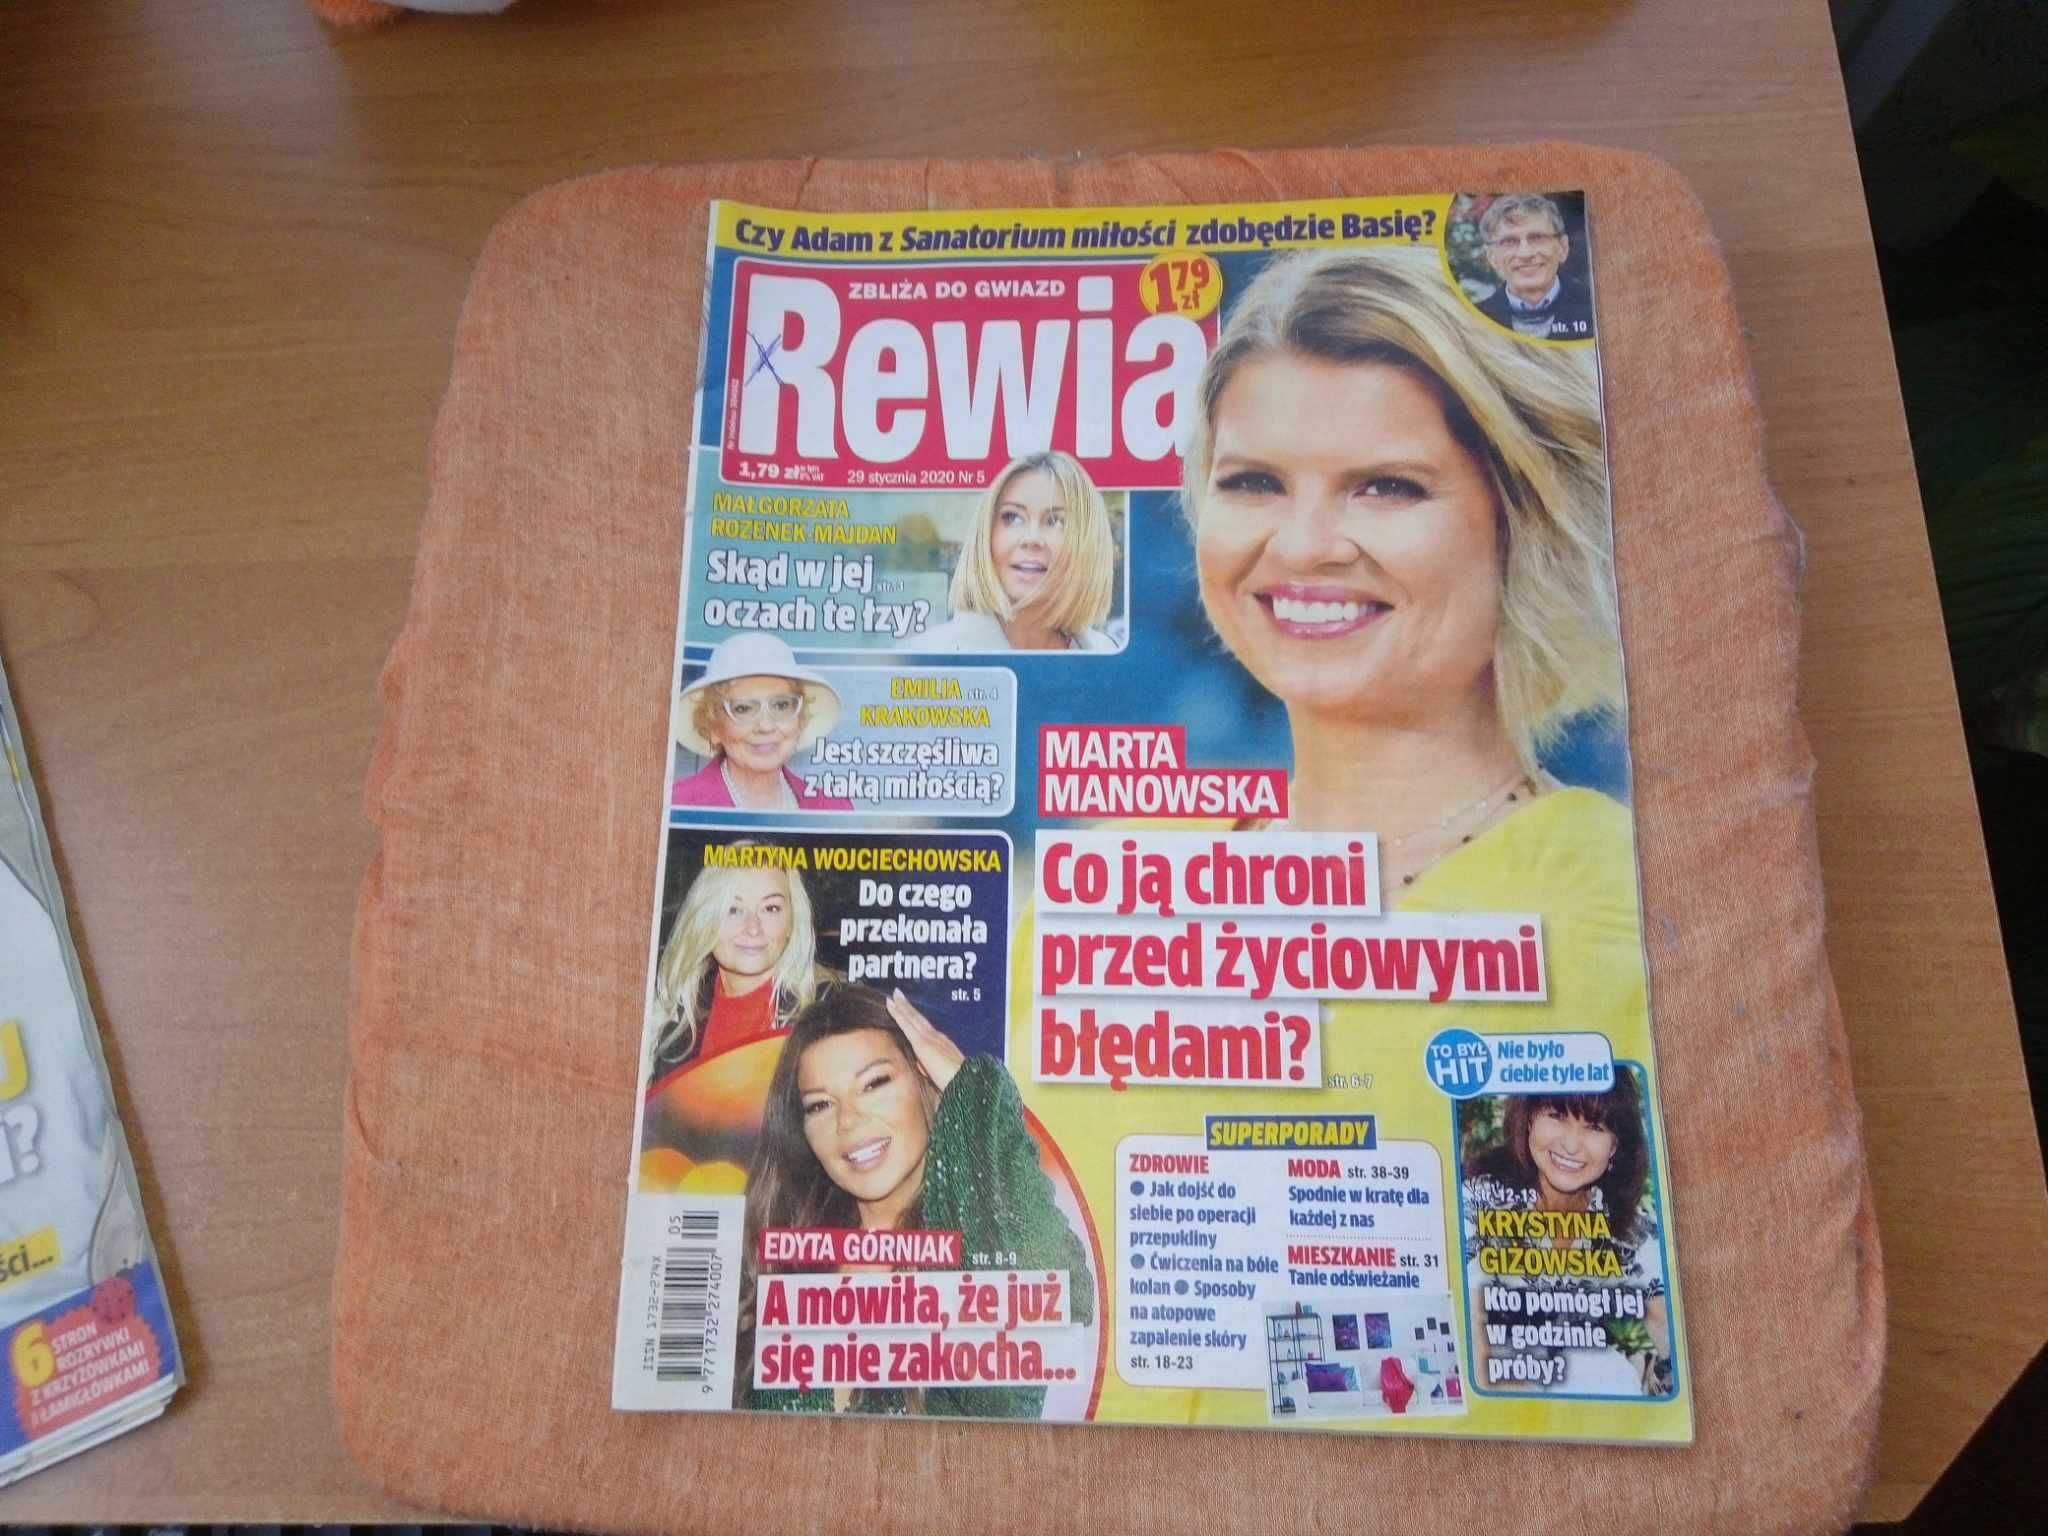 Tygodnik Rewia zbliża do gwiazd nr 5 styczeń 2020 gazeta